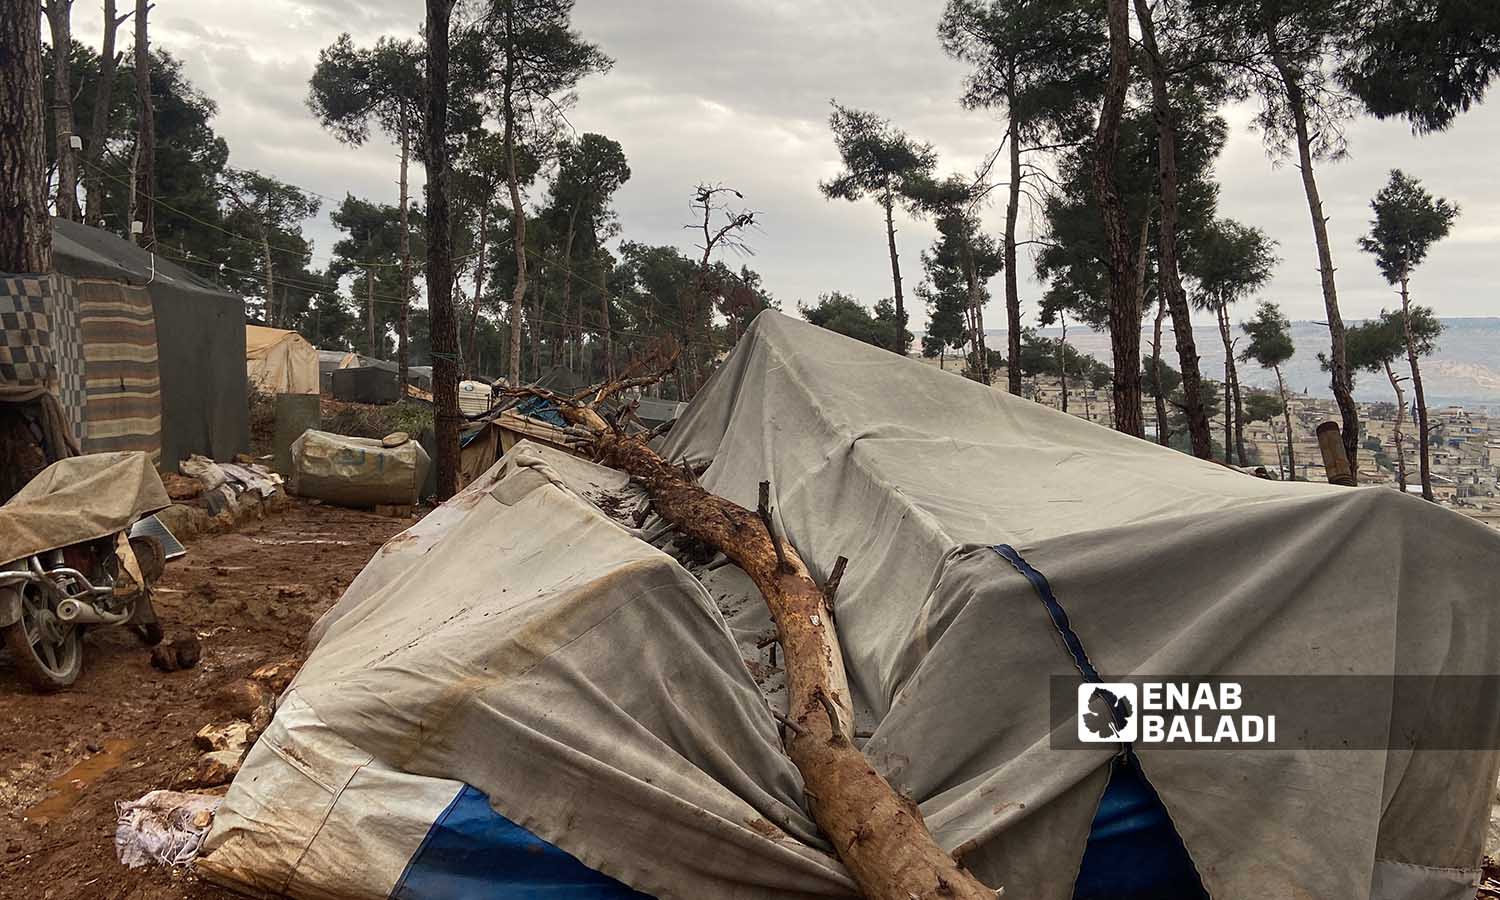 شجرة حراجية سقطت بفعل عاصفة هوائية على خيام يقيم بها مهجرون سوريون في مخيم حرش الزيادية بعفرين- 26 من كانون الأول 2022 (عنب بلدي/ أمير خربطلي)